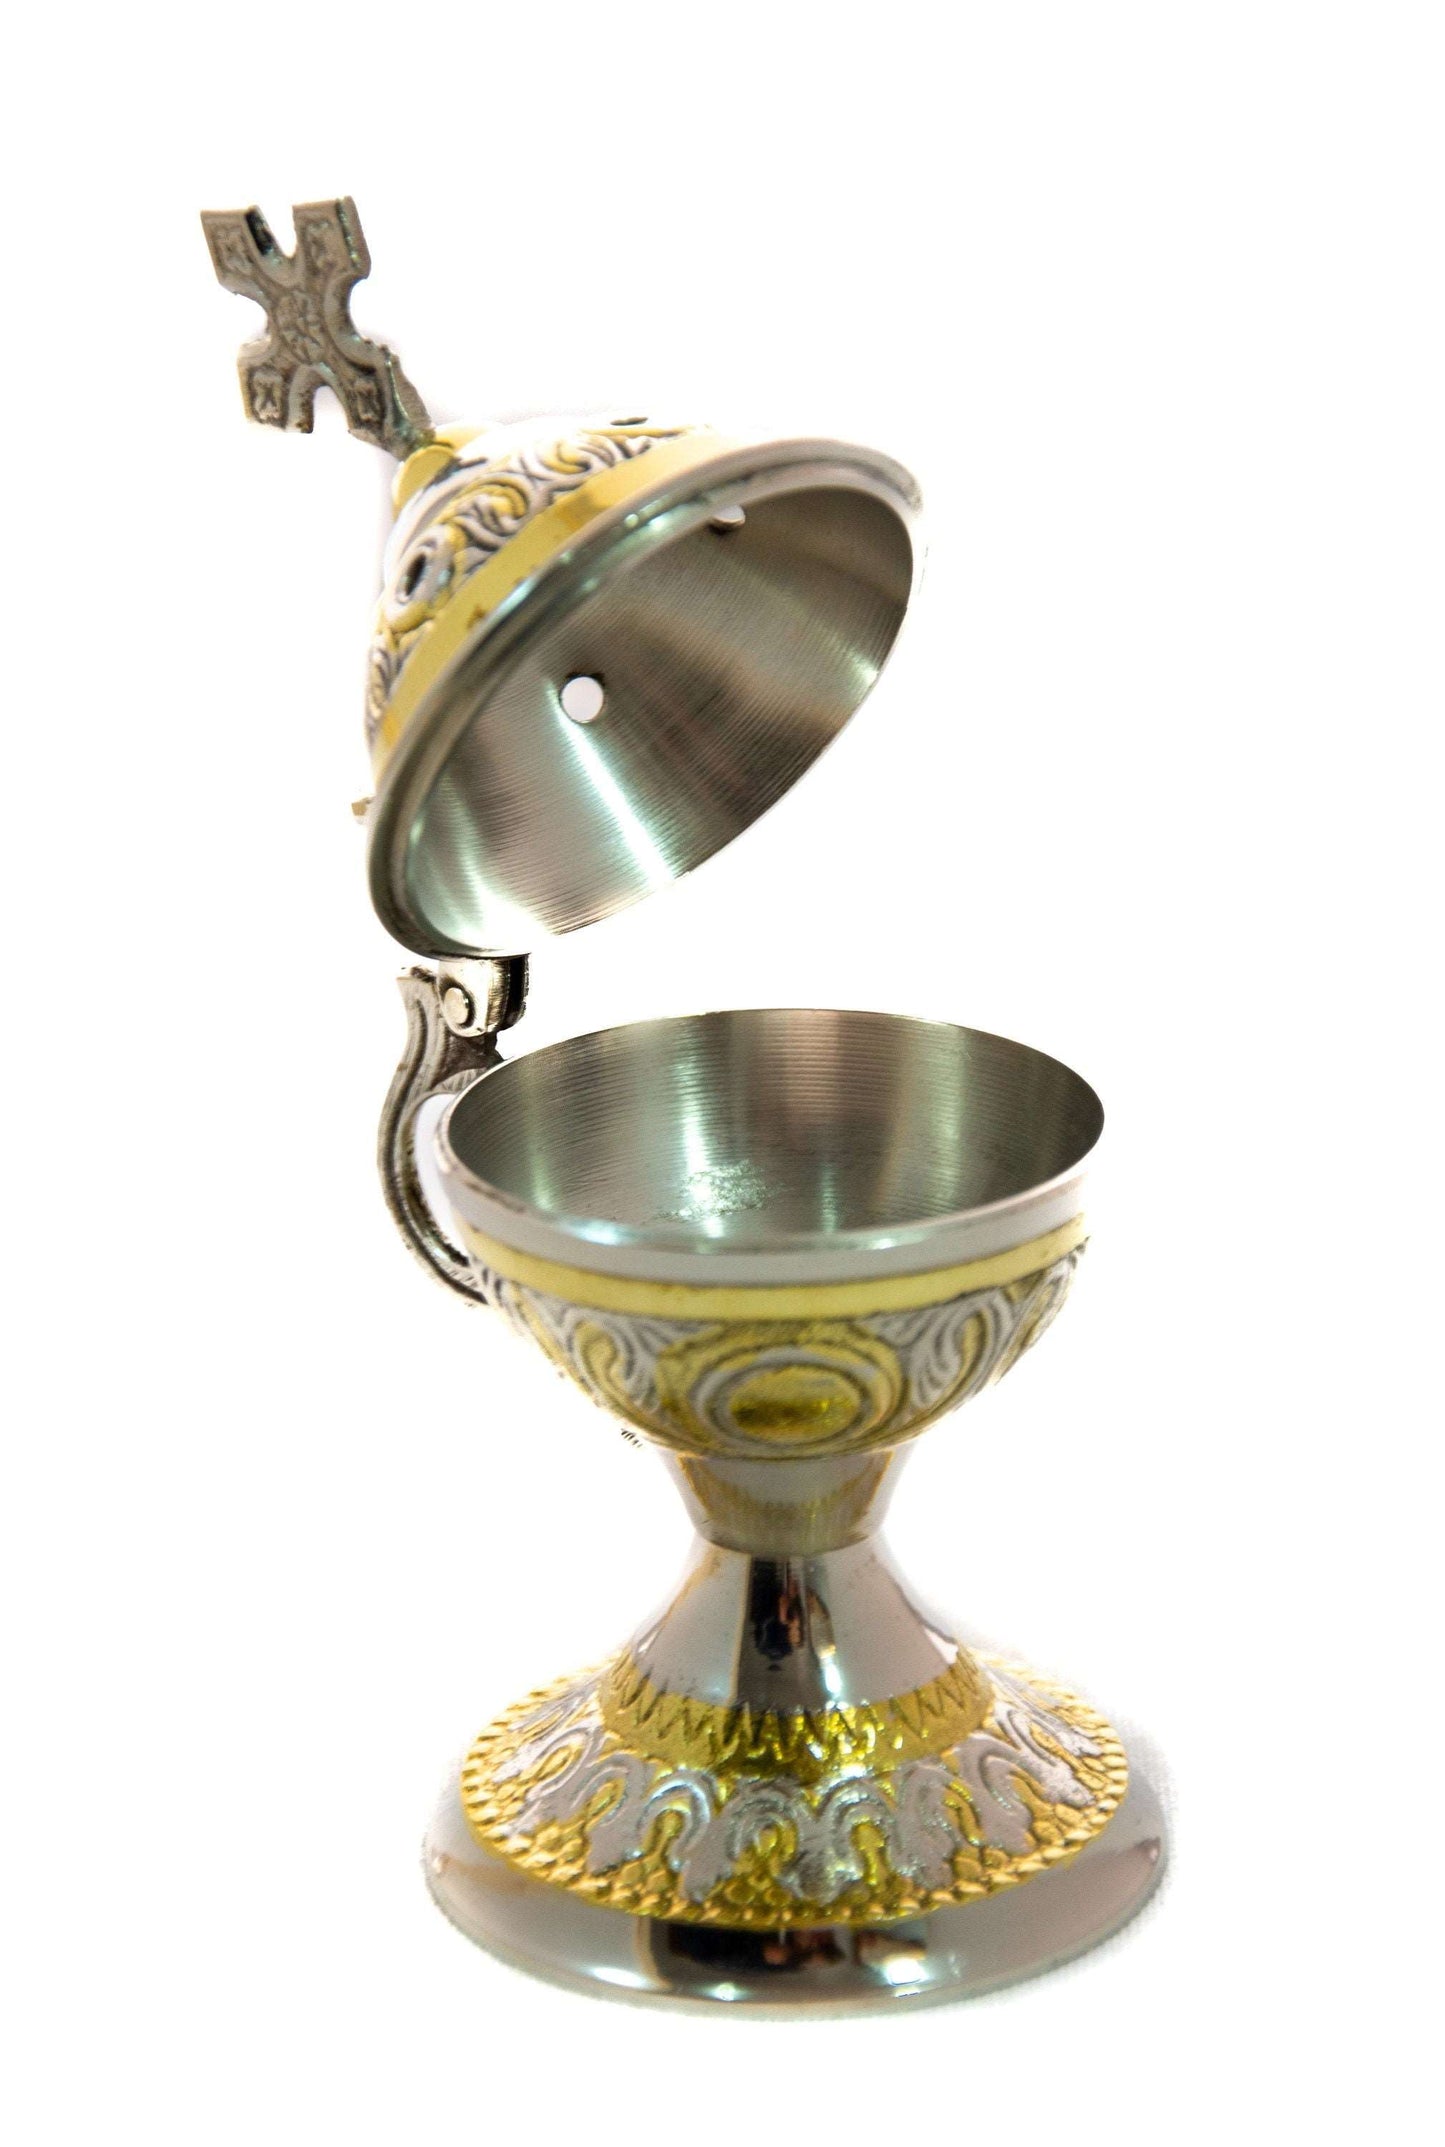 Christian Brass Resin Incense Burner, Greek Orthodox Thurible Incense holder, Metal Byzantine Home Censer Perfume burner, religious decor TheHolyArt